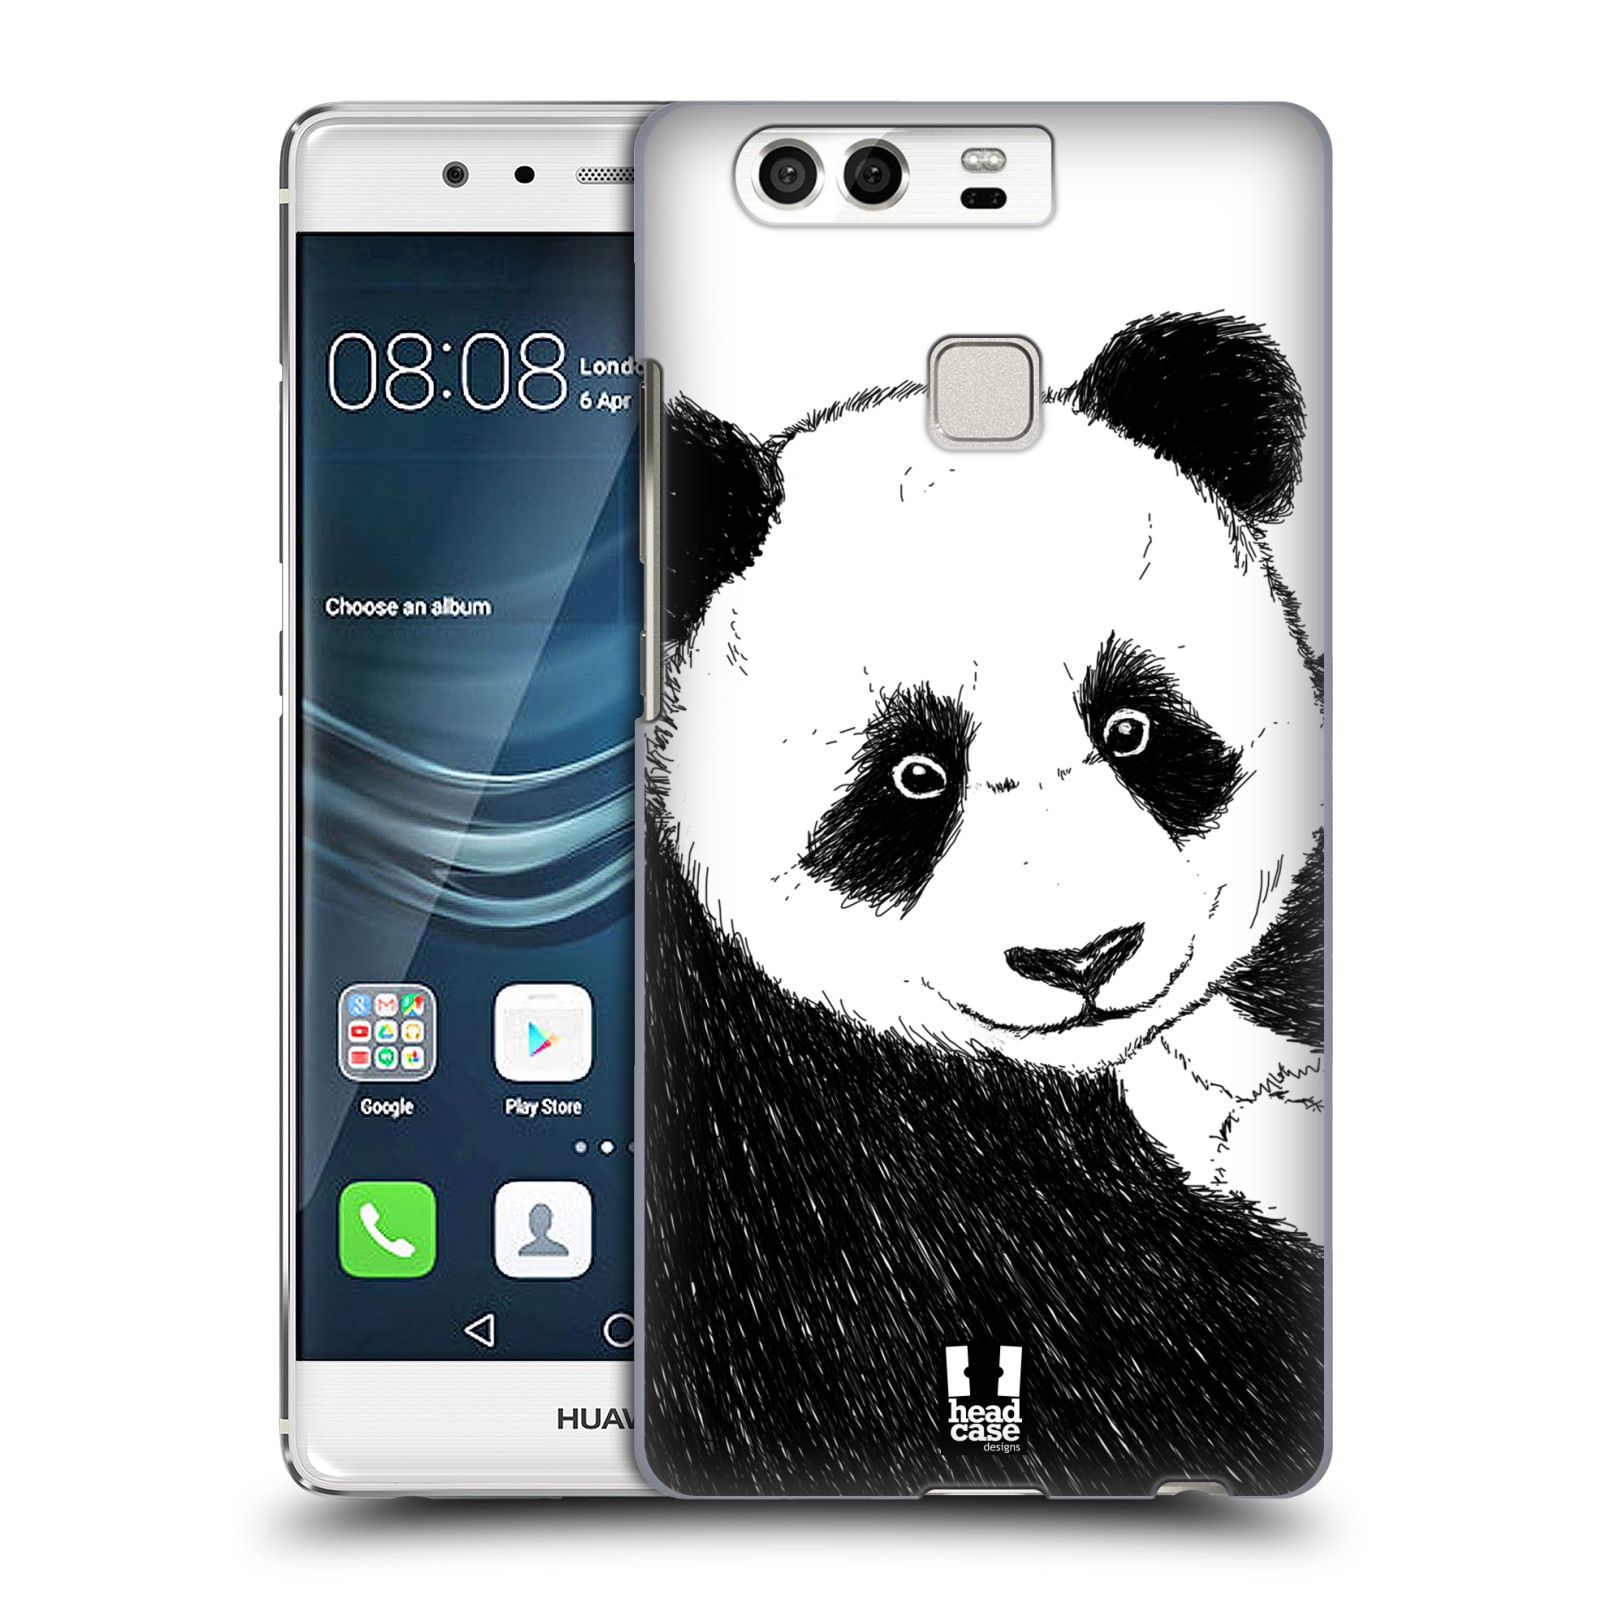 HEAD CASE plastový obal na mobil Huawei P9 / P9 DUAL SIM vzor Kreslená zvířátka černá a bílá panda